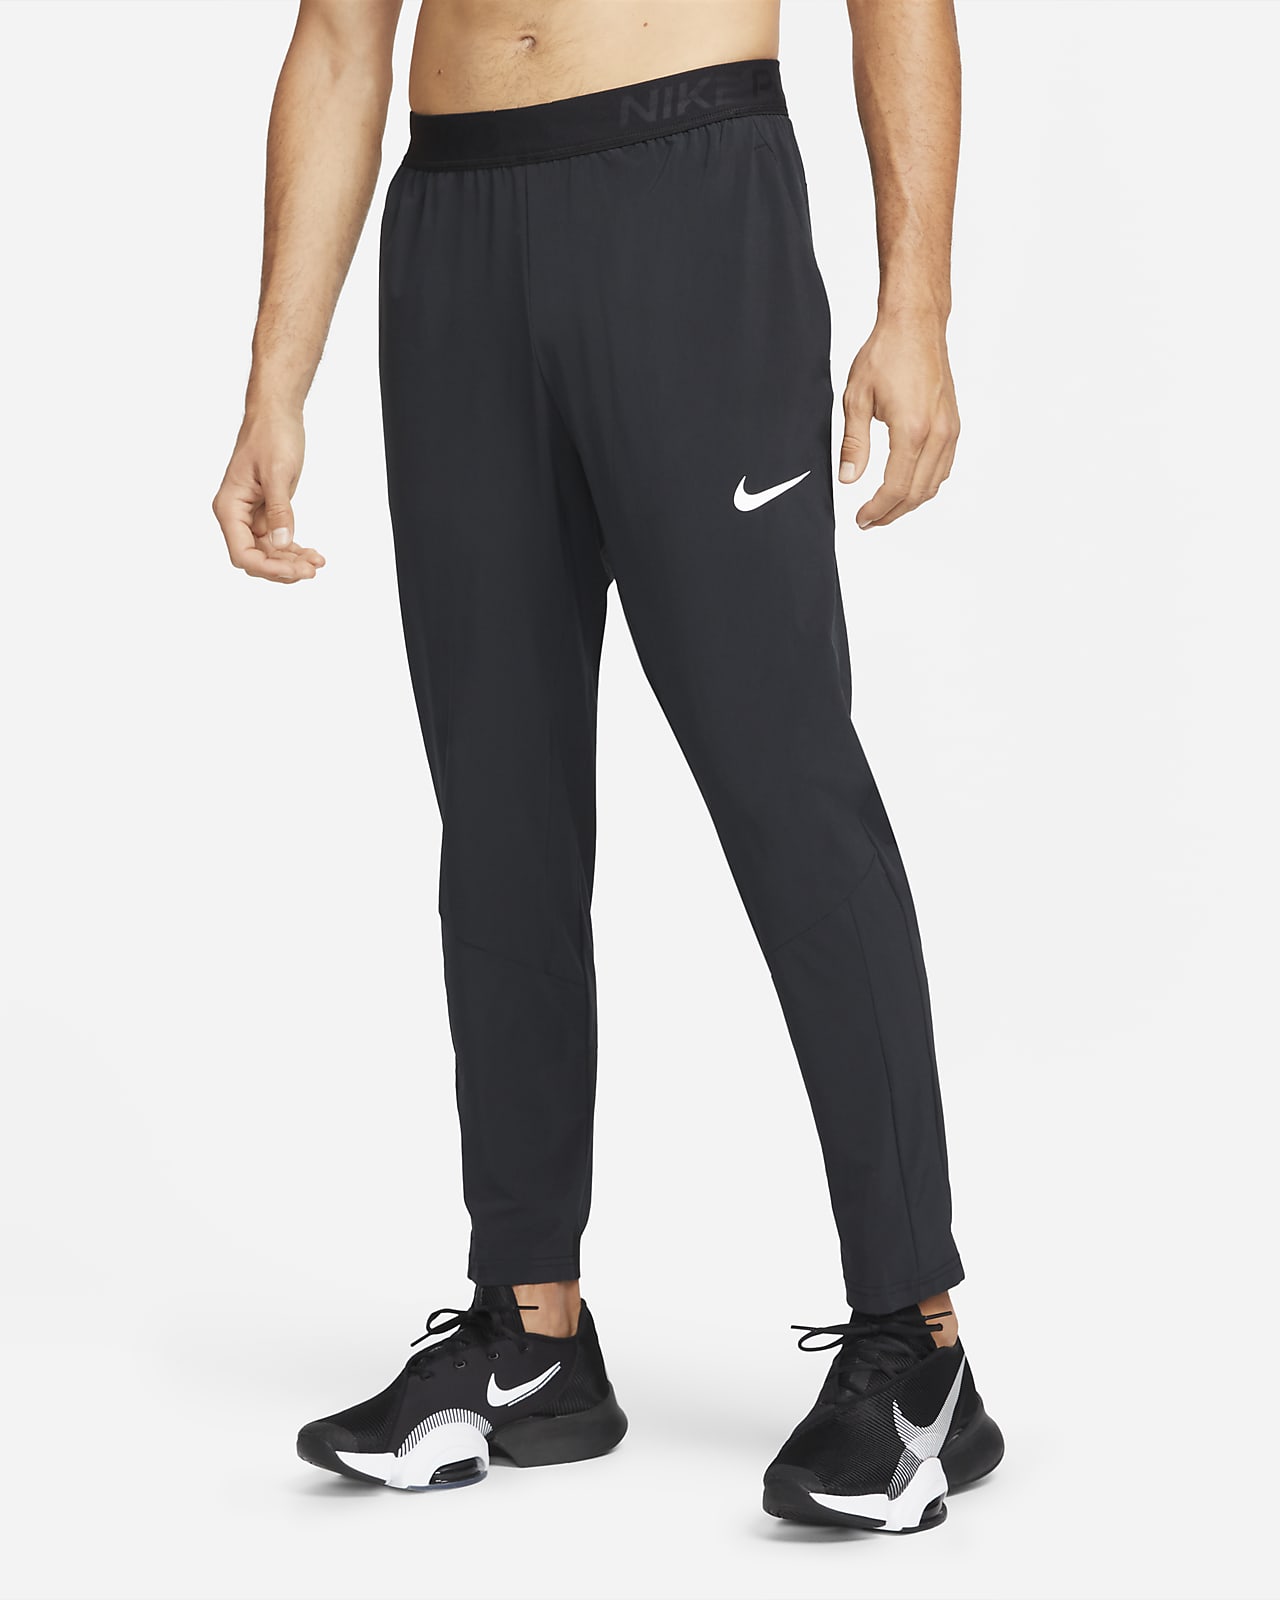 Pantaloni da Nike Vent Max - Uomo. Nike IT